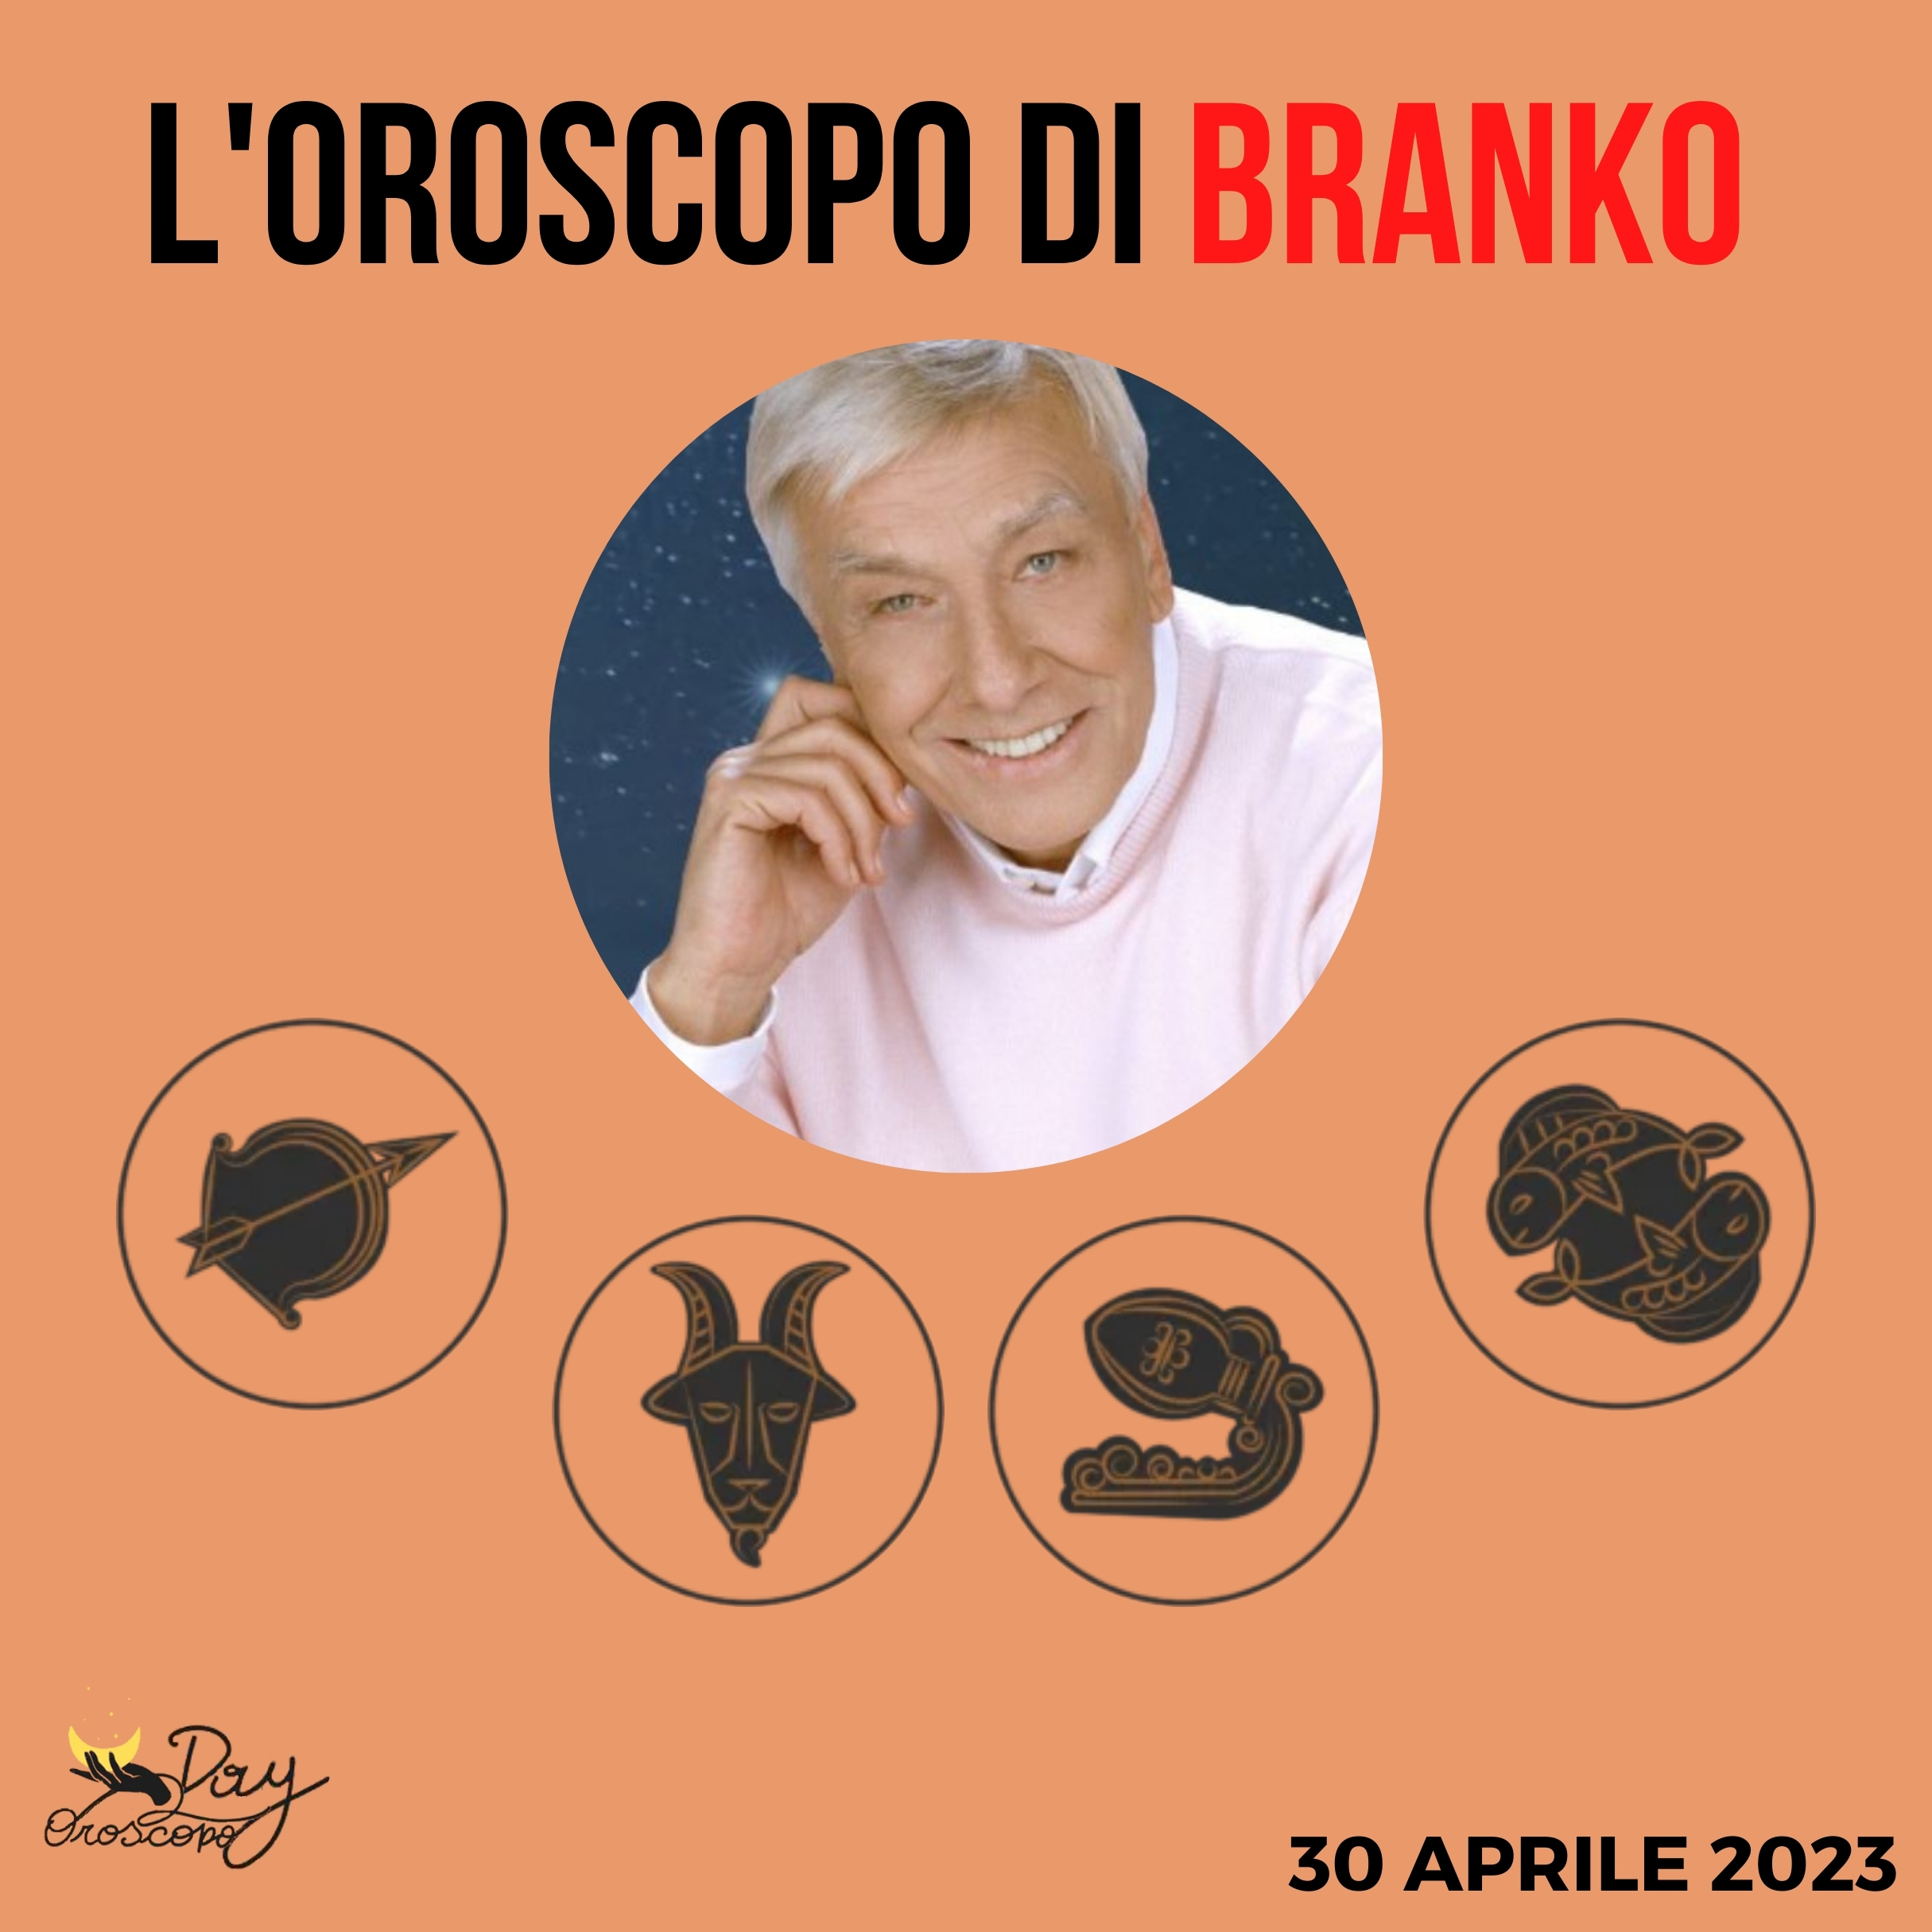 Oroscopo oggi domani Branko 30 aprile Sagittario Capricorno Acquario Pesci